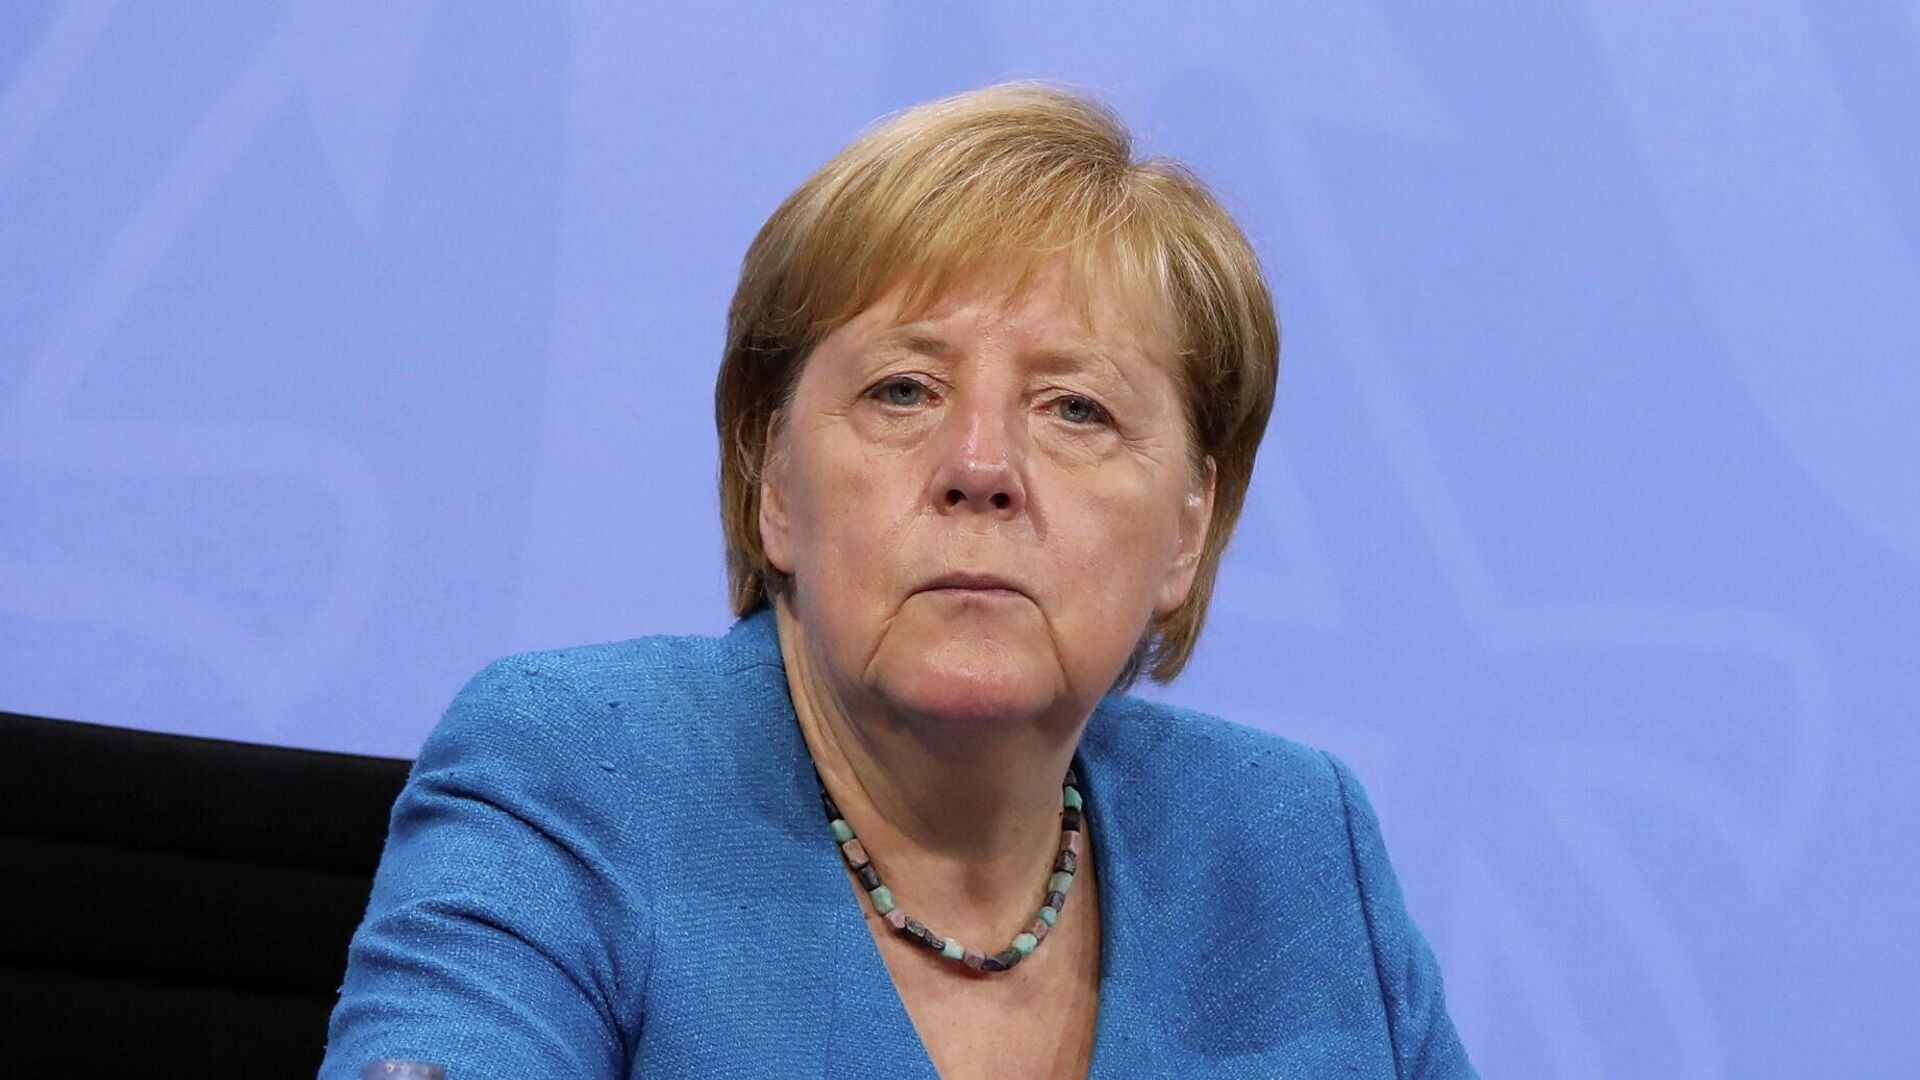 Vokietijos kanclerė Angela Merkel - Sputnik Lietuva, 1920, 05.09.2021